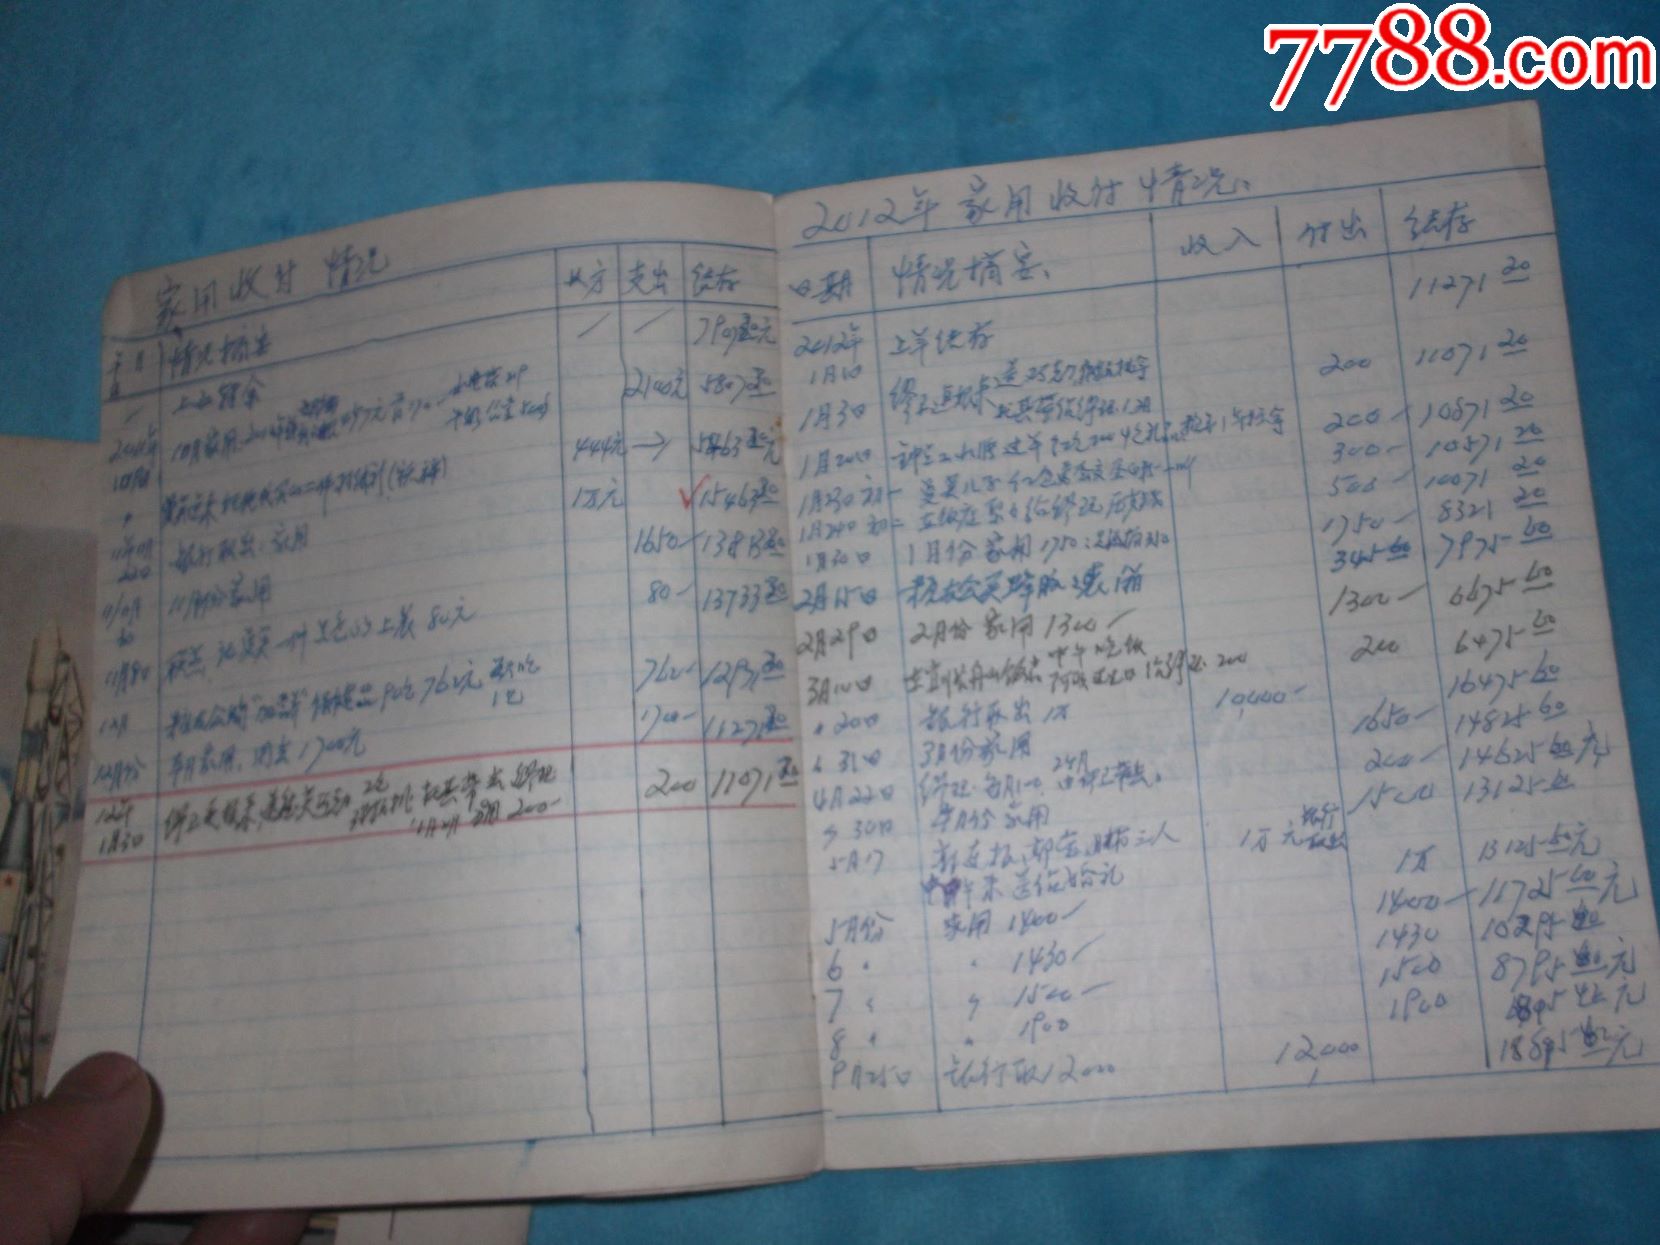 80年代练习本两本合售,记录的是上海一个家庭